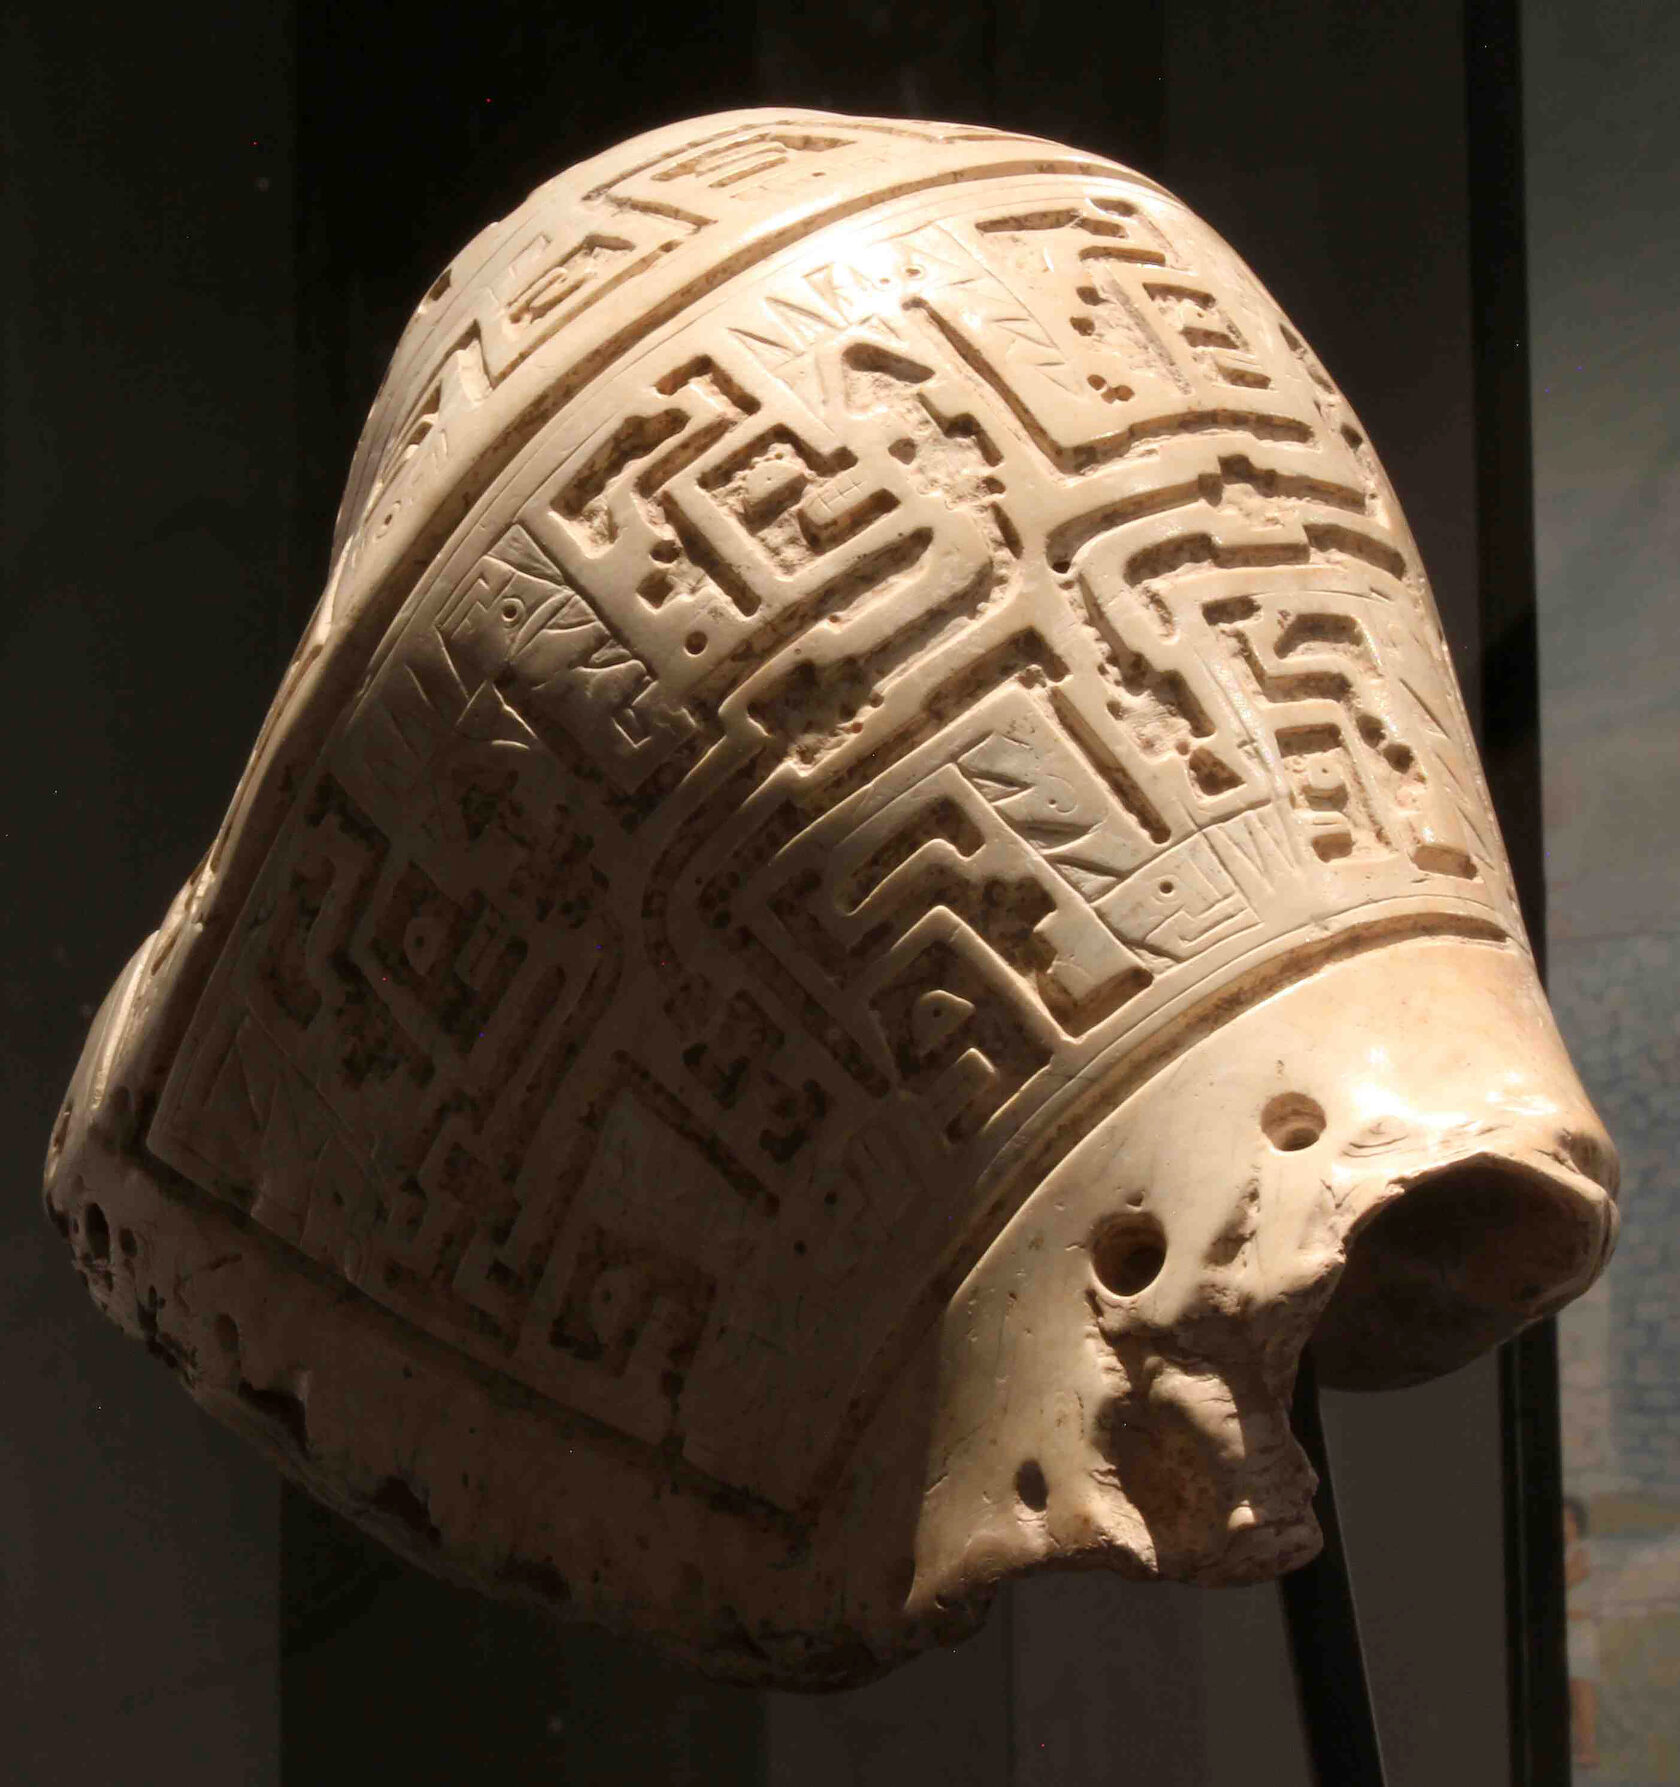 Путуто (духовой музыкальный инструмент из раковины). Найден при раскопках Чавин де Уантар, Перу. Фотография с сайта Университета Станфорда.